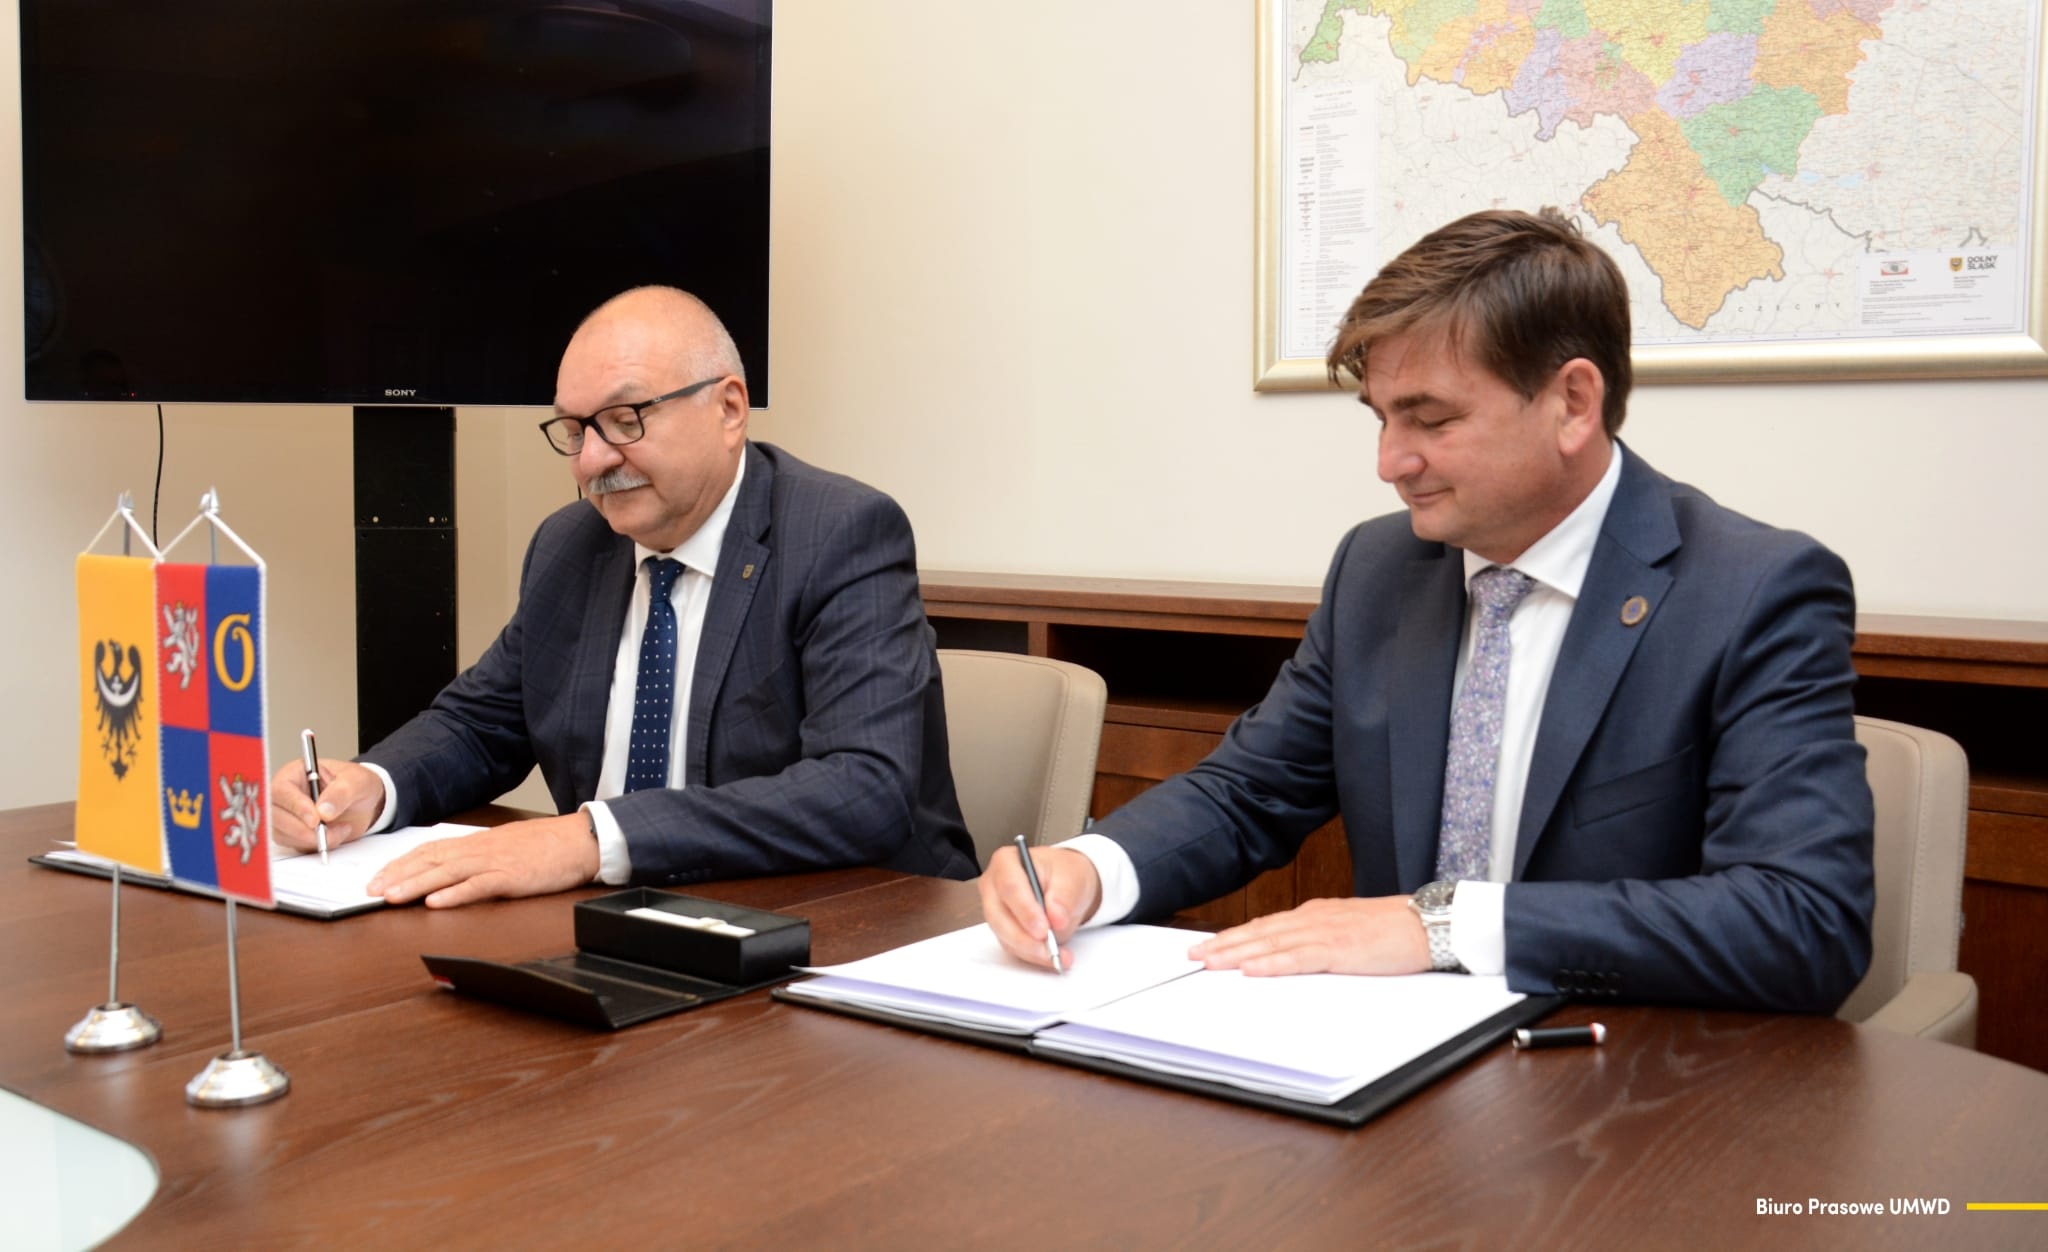 Královéhradecký kraj a Dolnoslezské vojvodství uzavřely dohodu o rozvoji dopravní sítě a veřejných služeb v příhraničí